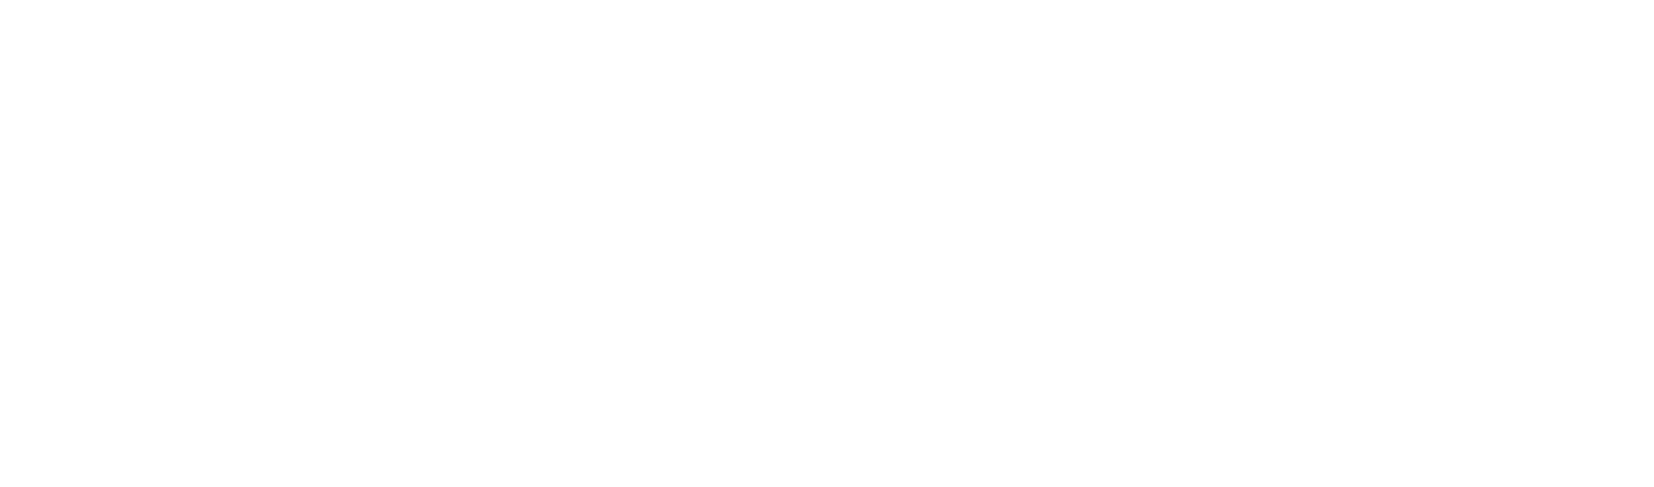 Fundación EducAccion Chile